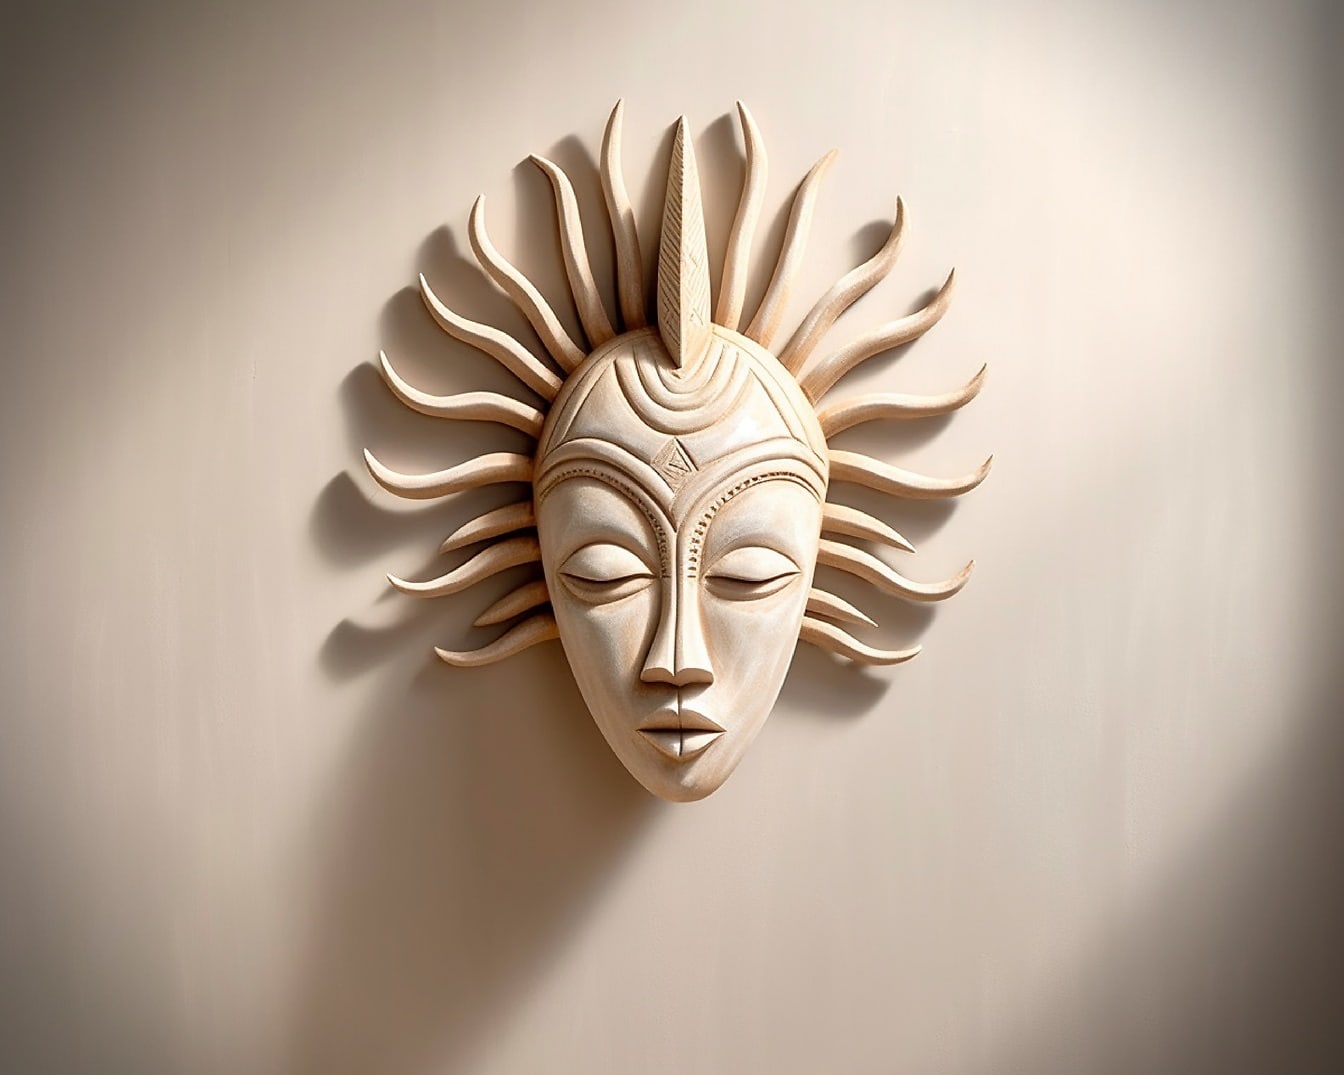 Ručno izrađena umjetnička djela za rezbarenje maske za lice u afričkom stilu